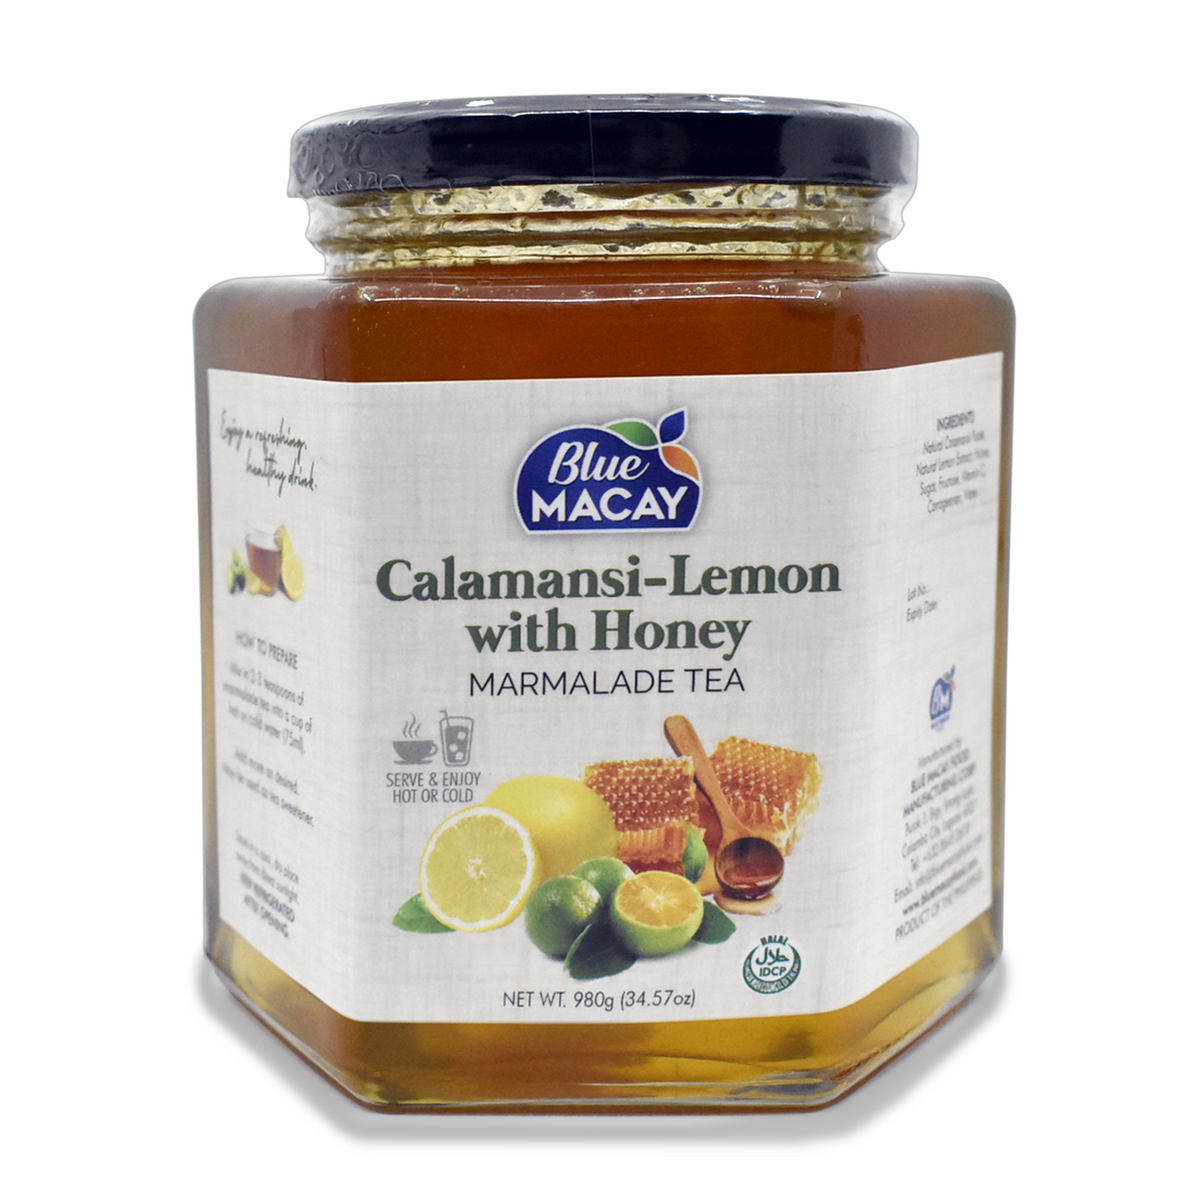 Calamansi-Lemon with Honey MARMALADE TEA